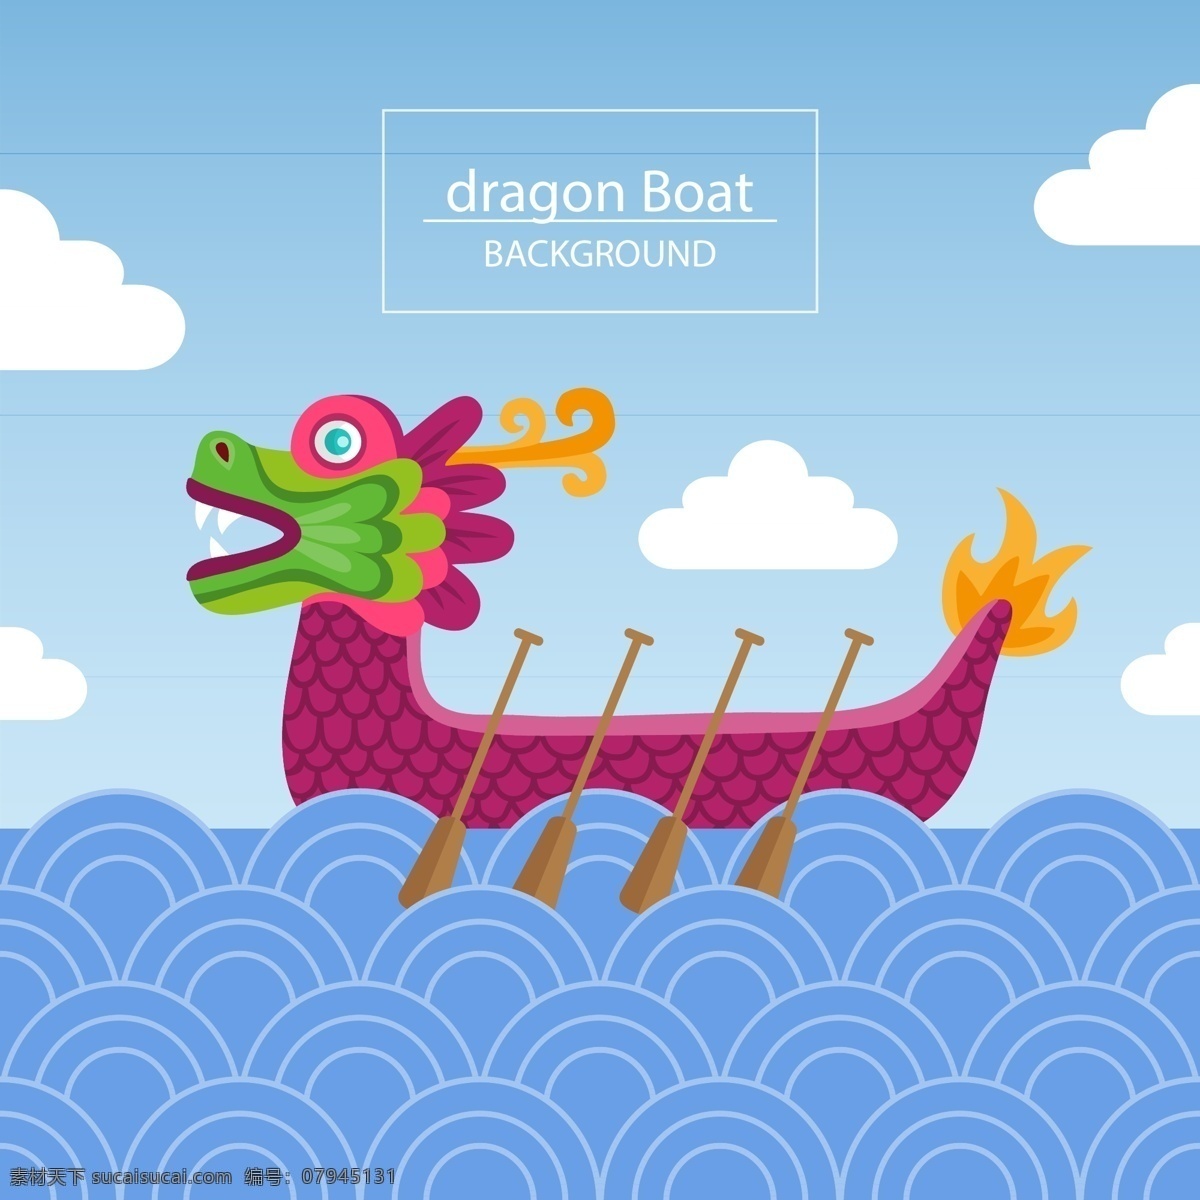 简约 紫色 龙舟 端午节 节日 元素 海面 白云 波浪 赛龙舟 节日元素 白色英文 船桨 庆祝节日